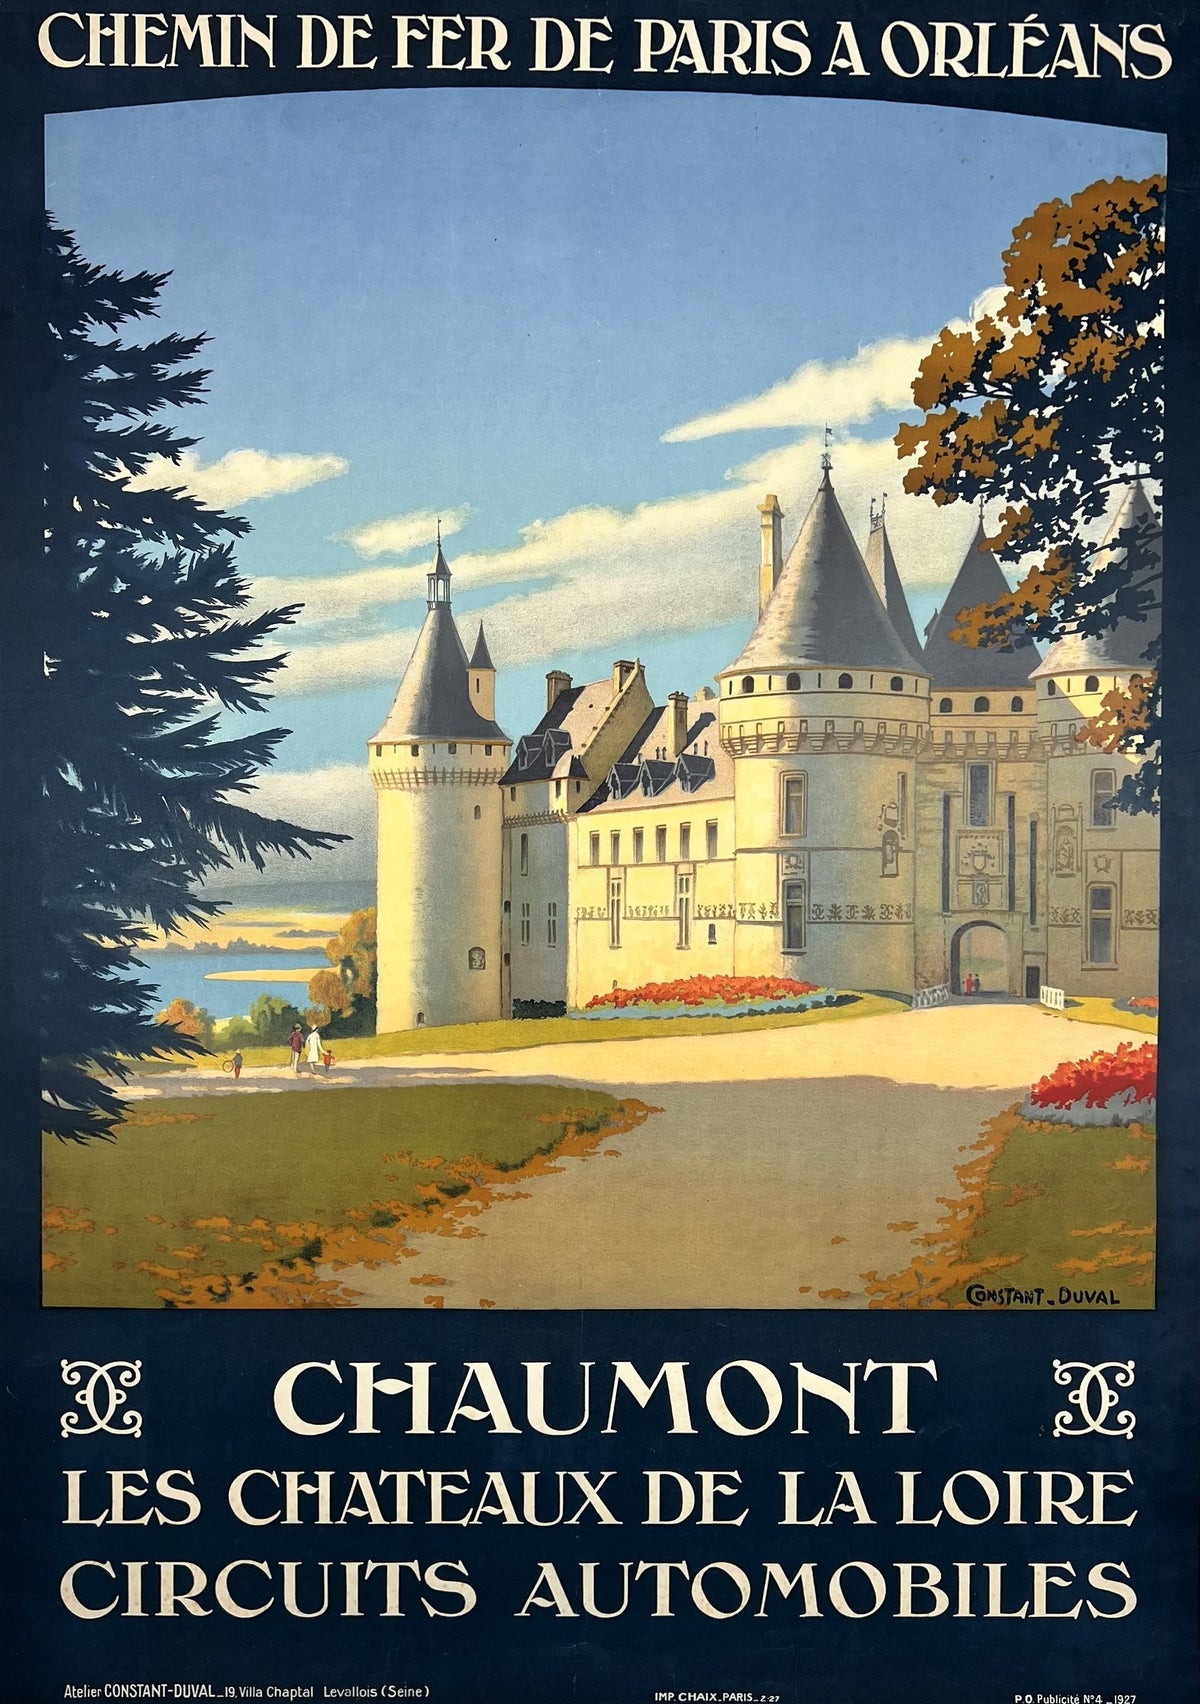 Chaumont Les Chateaux de la Lorie - Authentic Vintage Poster